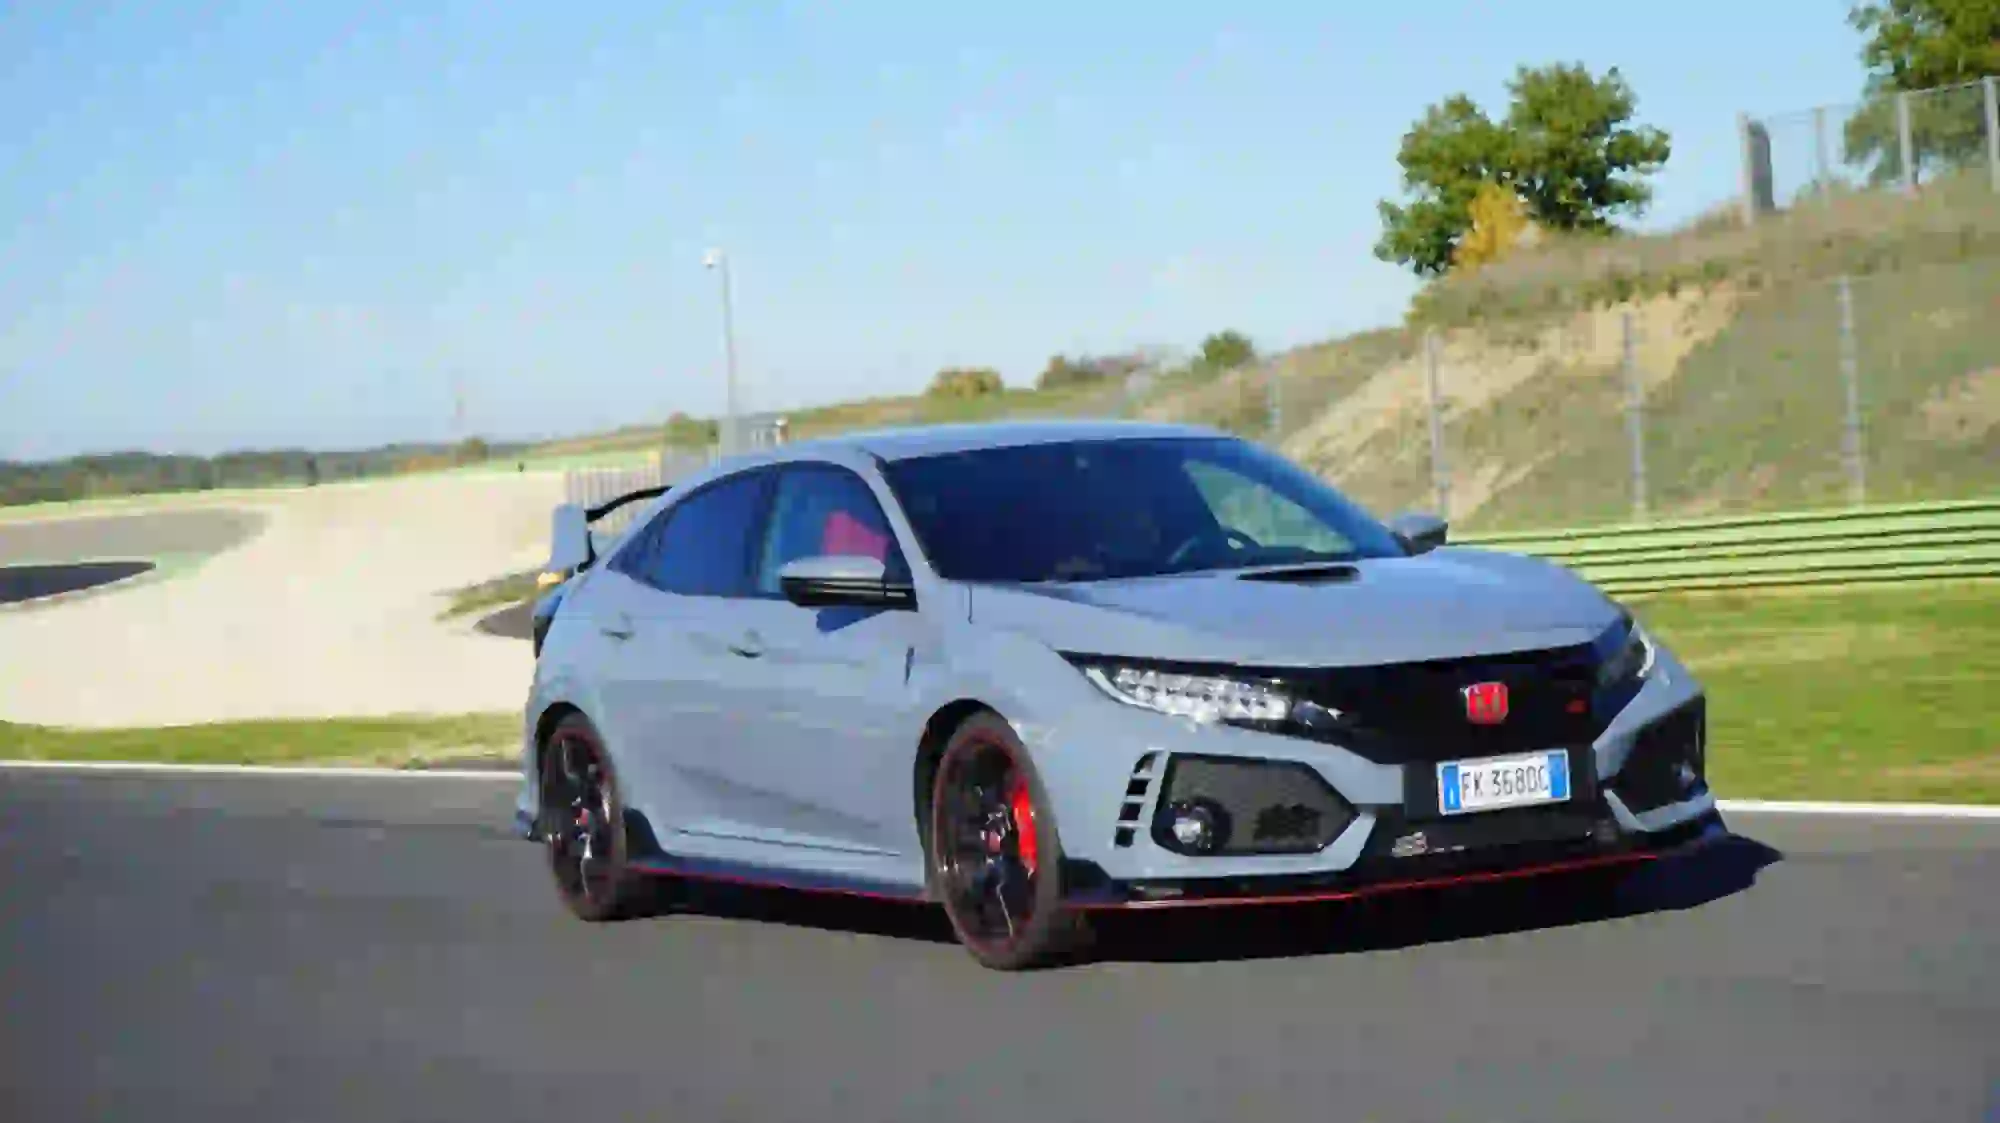 Honda Civic Type R 2017 - Vallelunga - 4